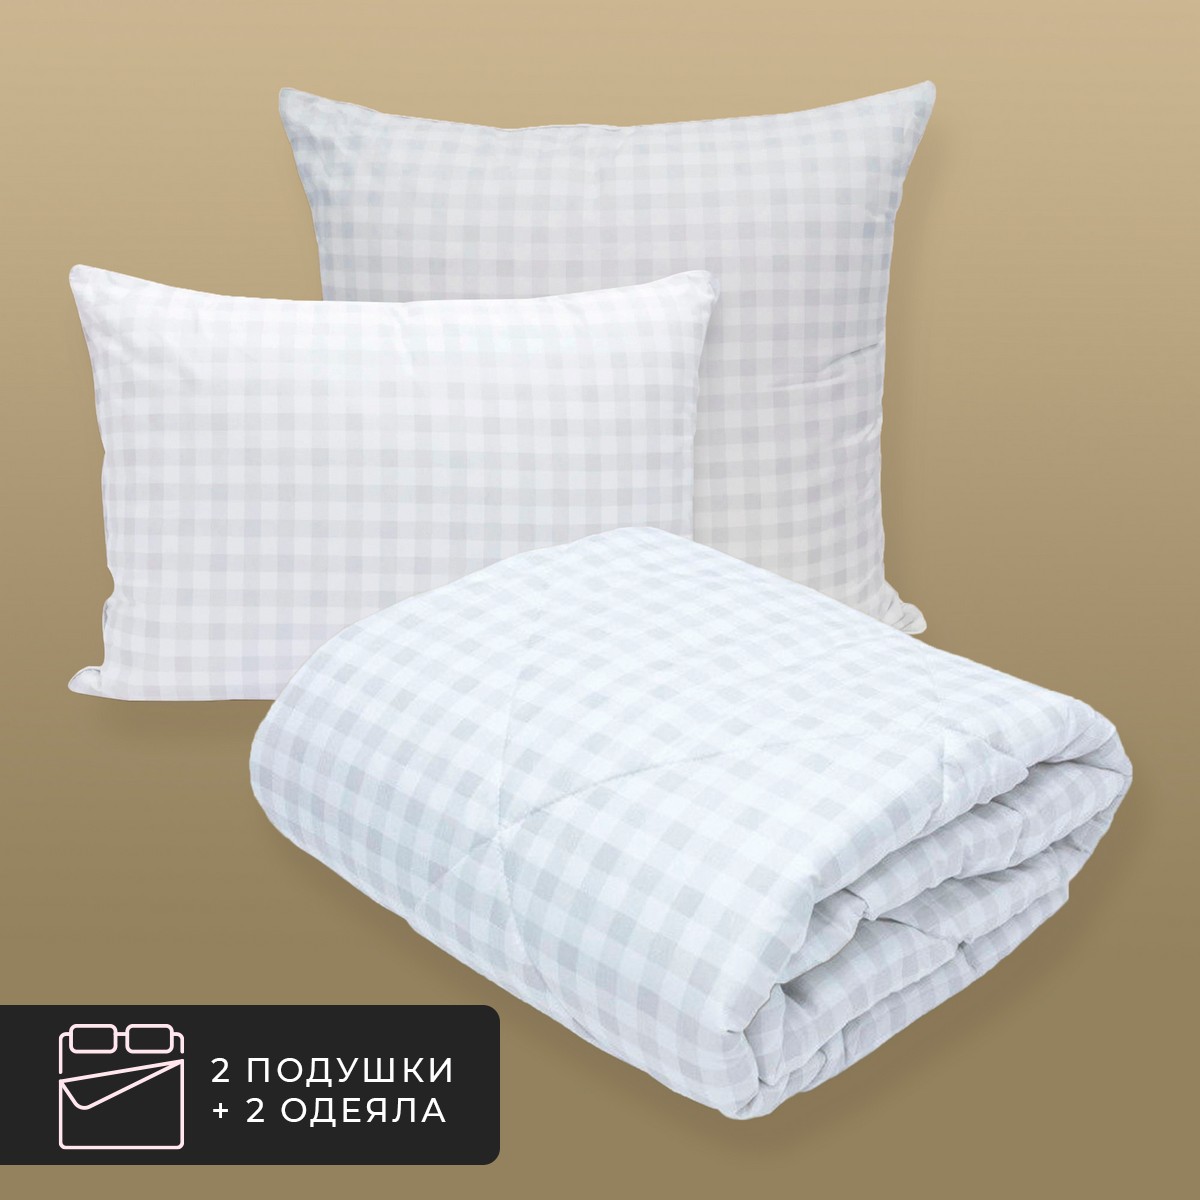 Набор 2 одеяла + 2 подушки Скандинавия, лебяжий пух в микрофибре (140х200-2 шт, 50х70-2 шт)